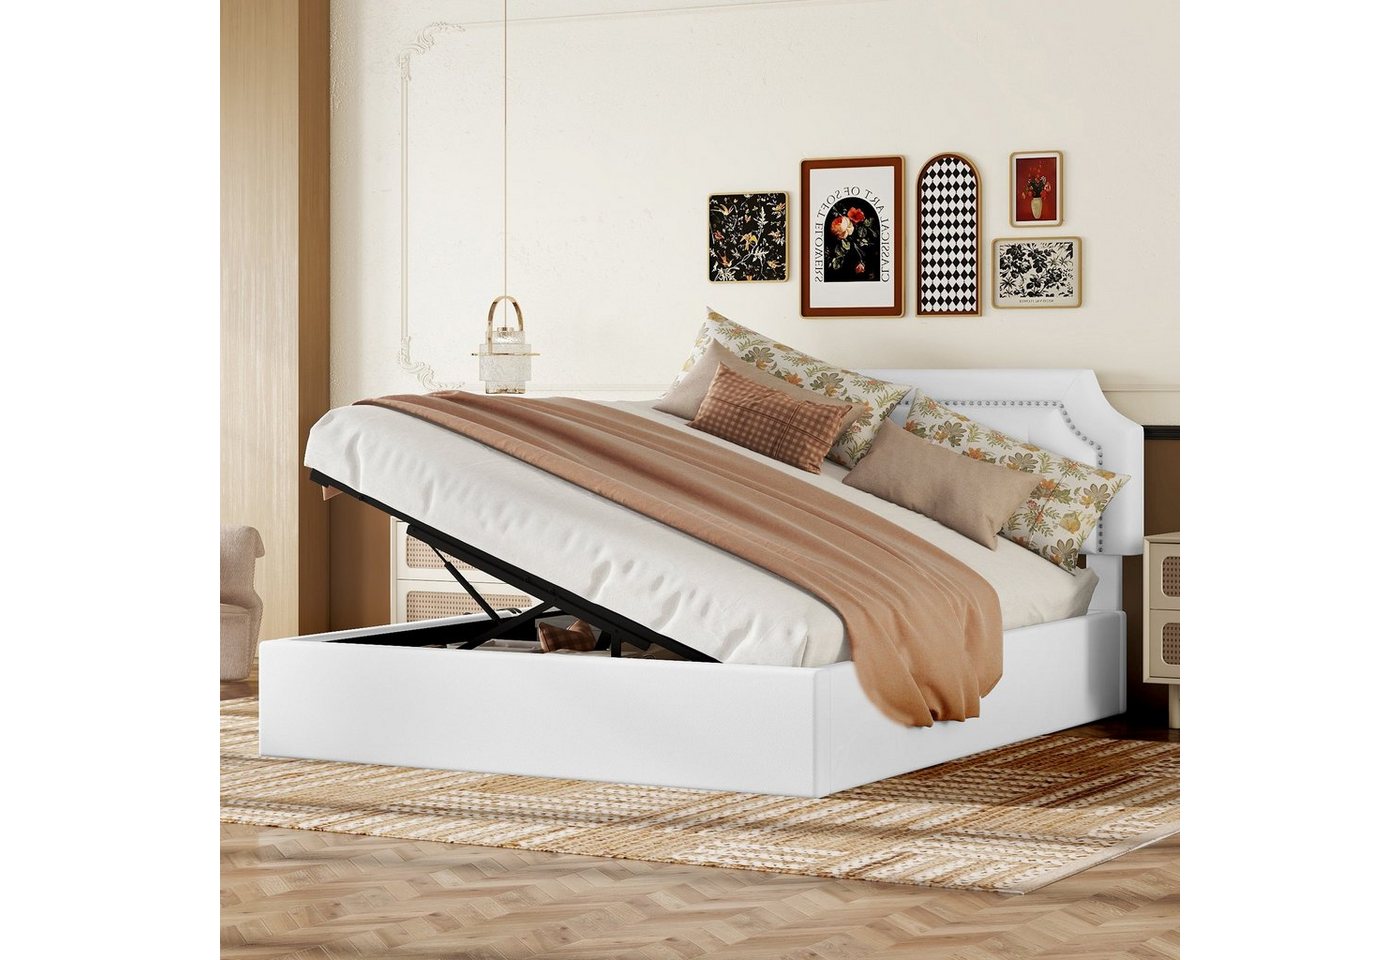 Ulife Polsterbett hydraulisches Zwei-Wege-Bett Stauraumbett Flachbett, minimalistisches Design, 160*200cm von Ulife